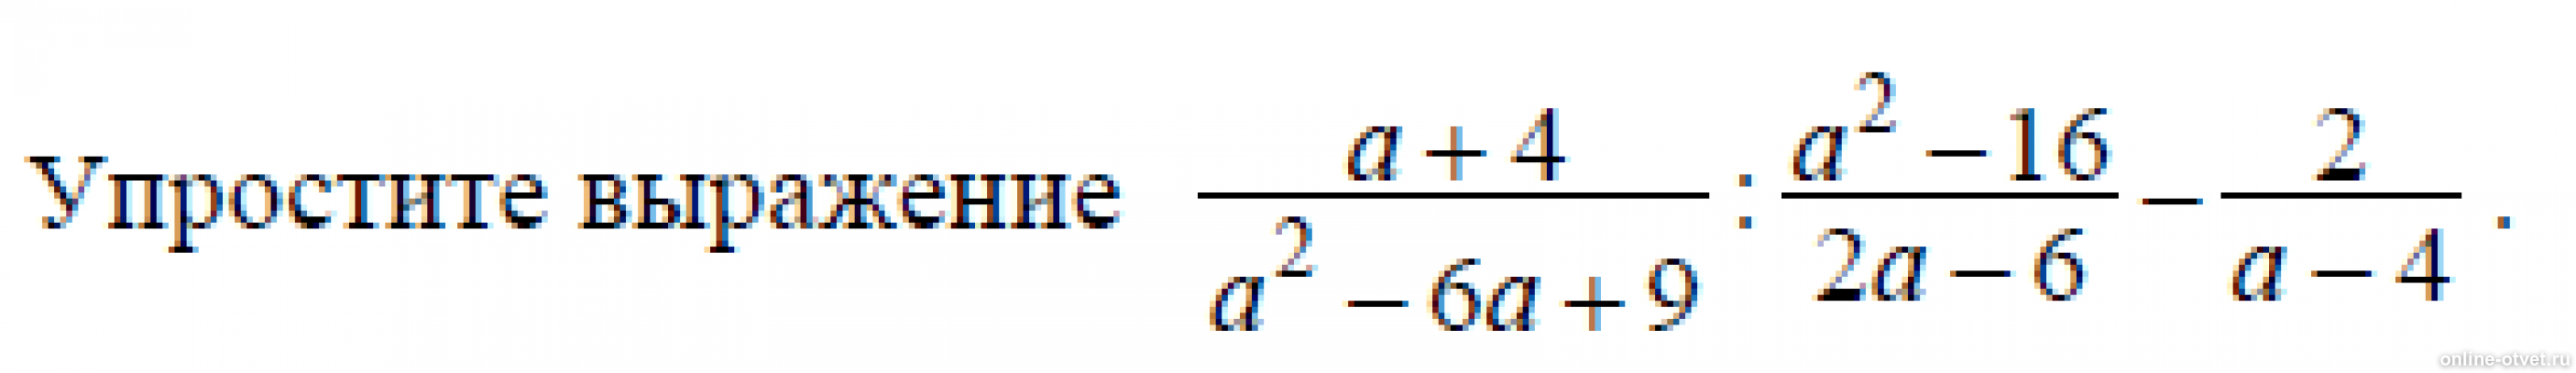 Найдите значение выражения 16а2 1 25b2. A-4/A^2+4+16 упростить выражение. Упростите выражения (a-8)^2. Упростите выражения а+2 а-3-4-а а+4. Упростите выражение 4a/a^2-4 * a+2/2a.